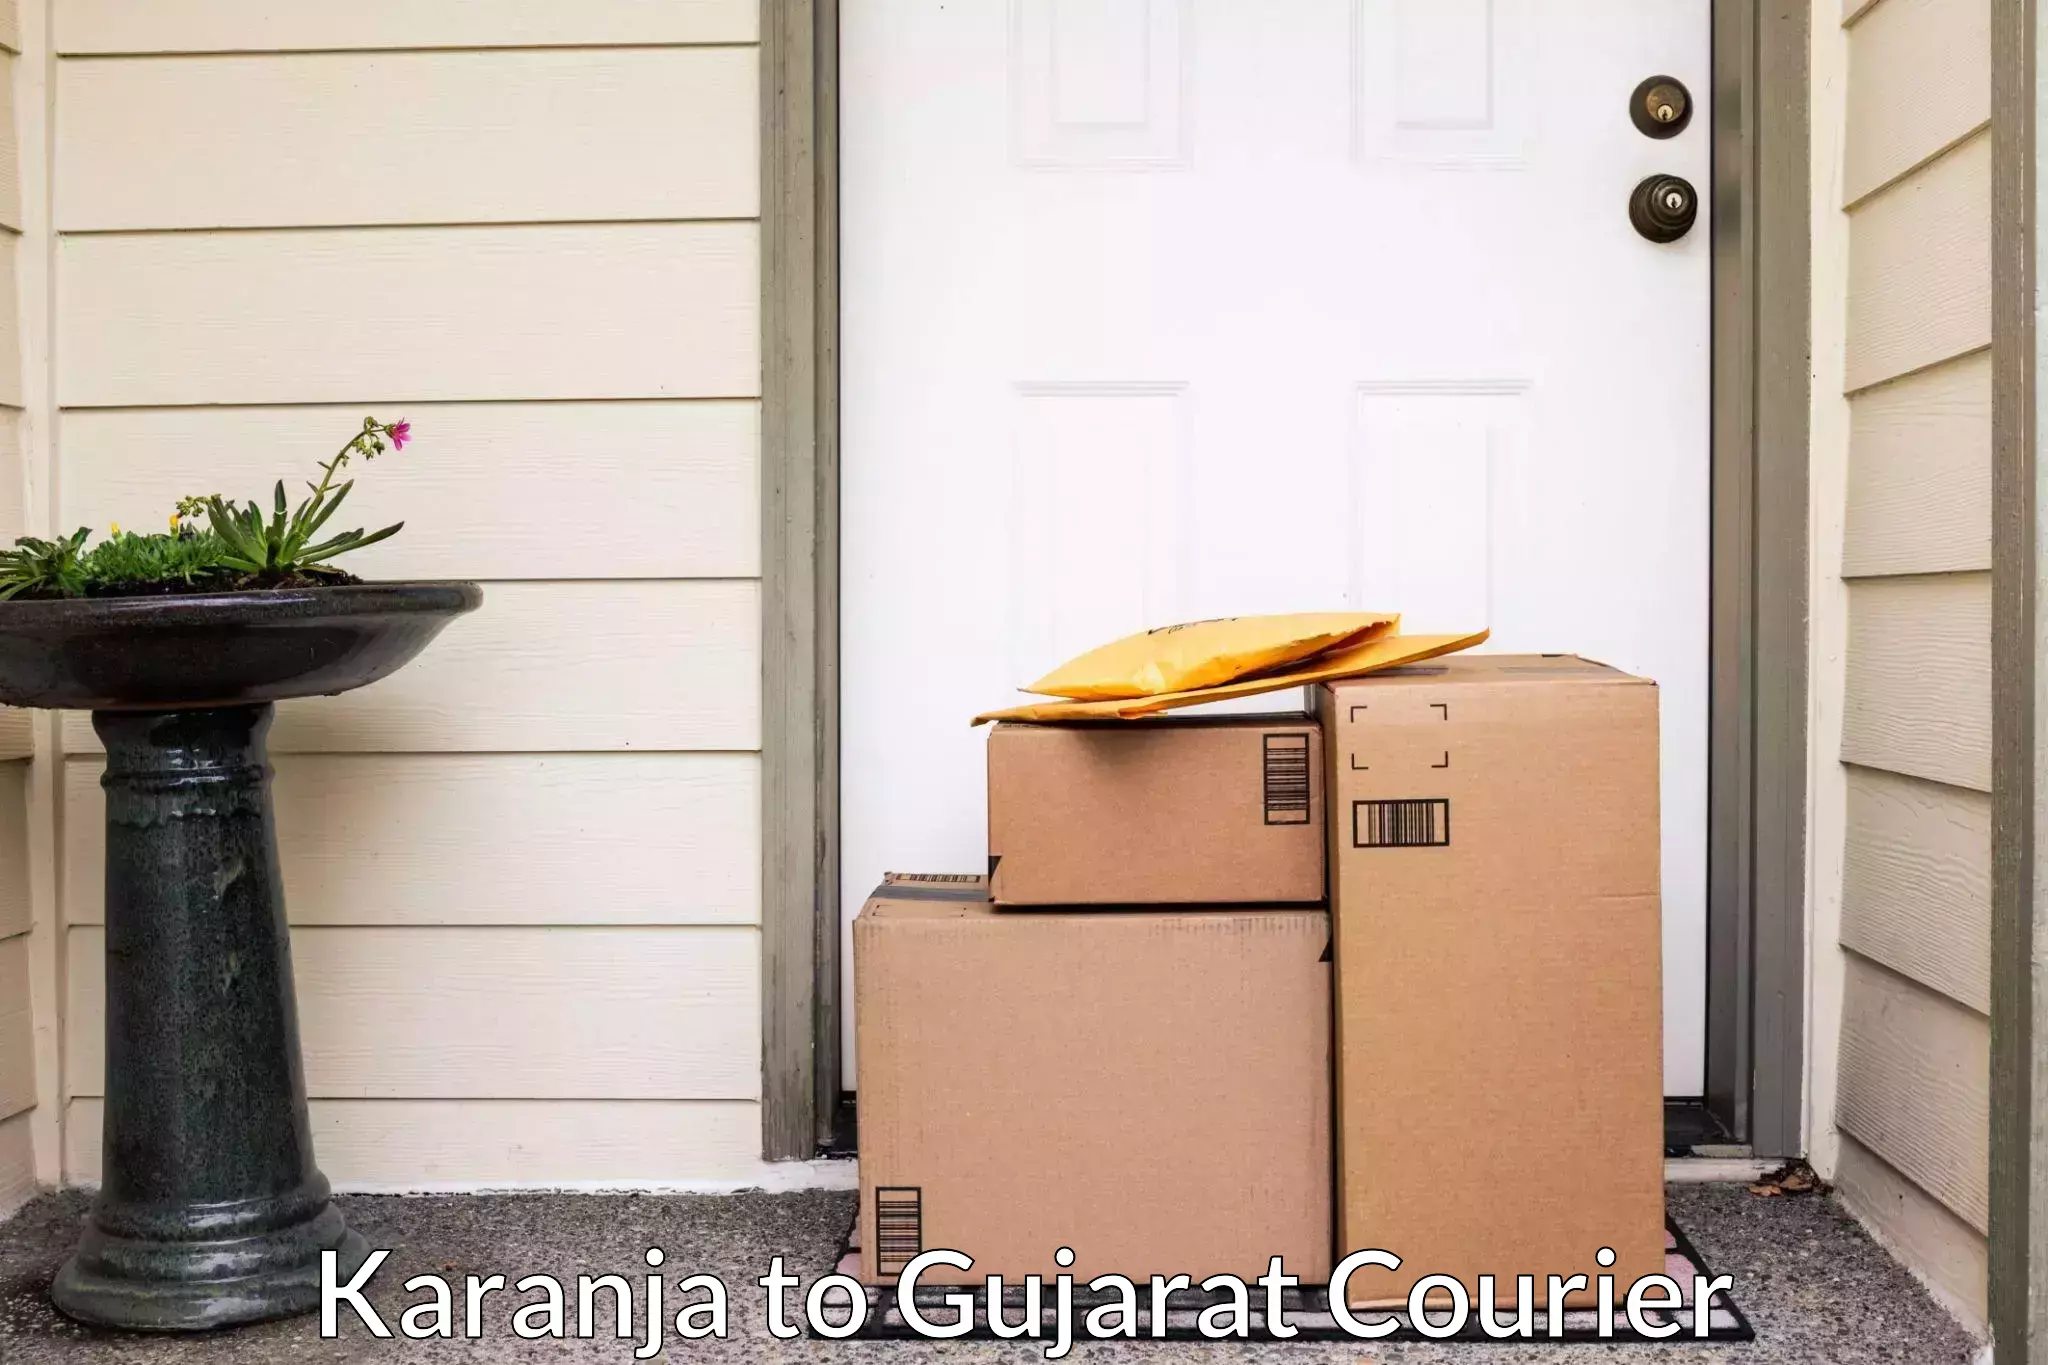 Professional packing services Karanja to Wankaner